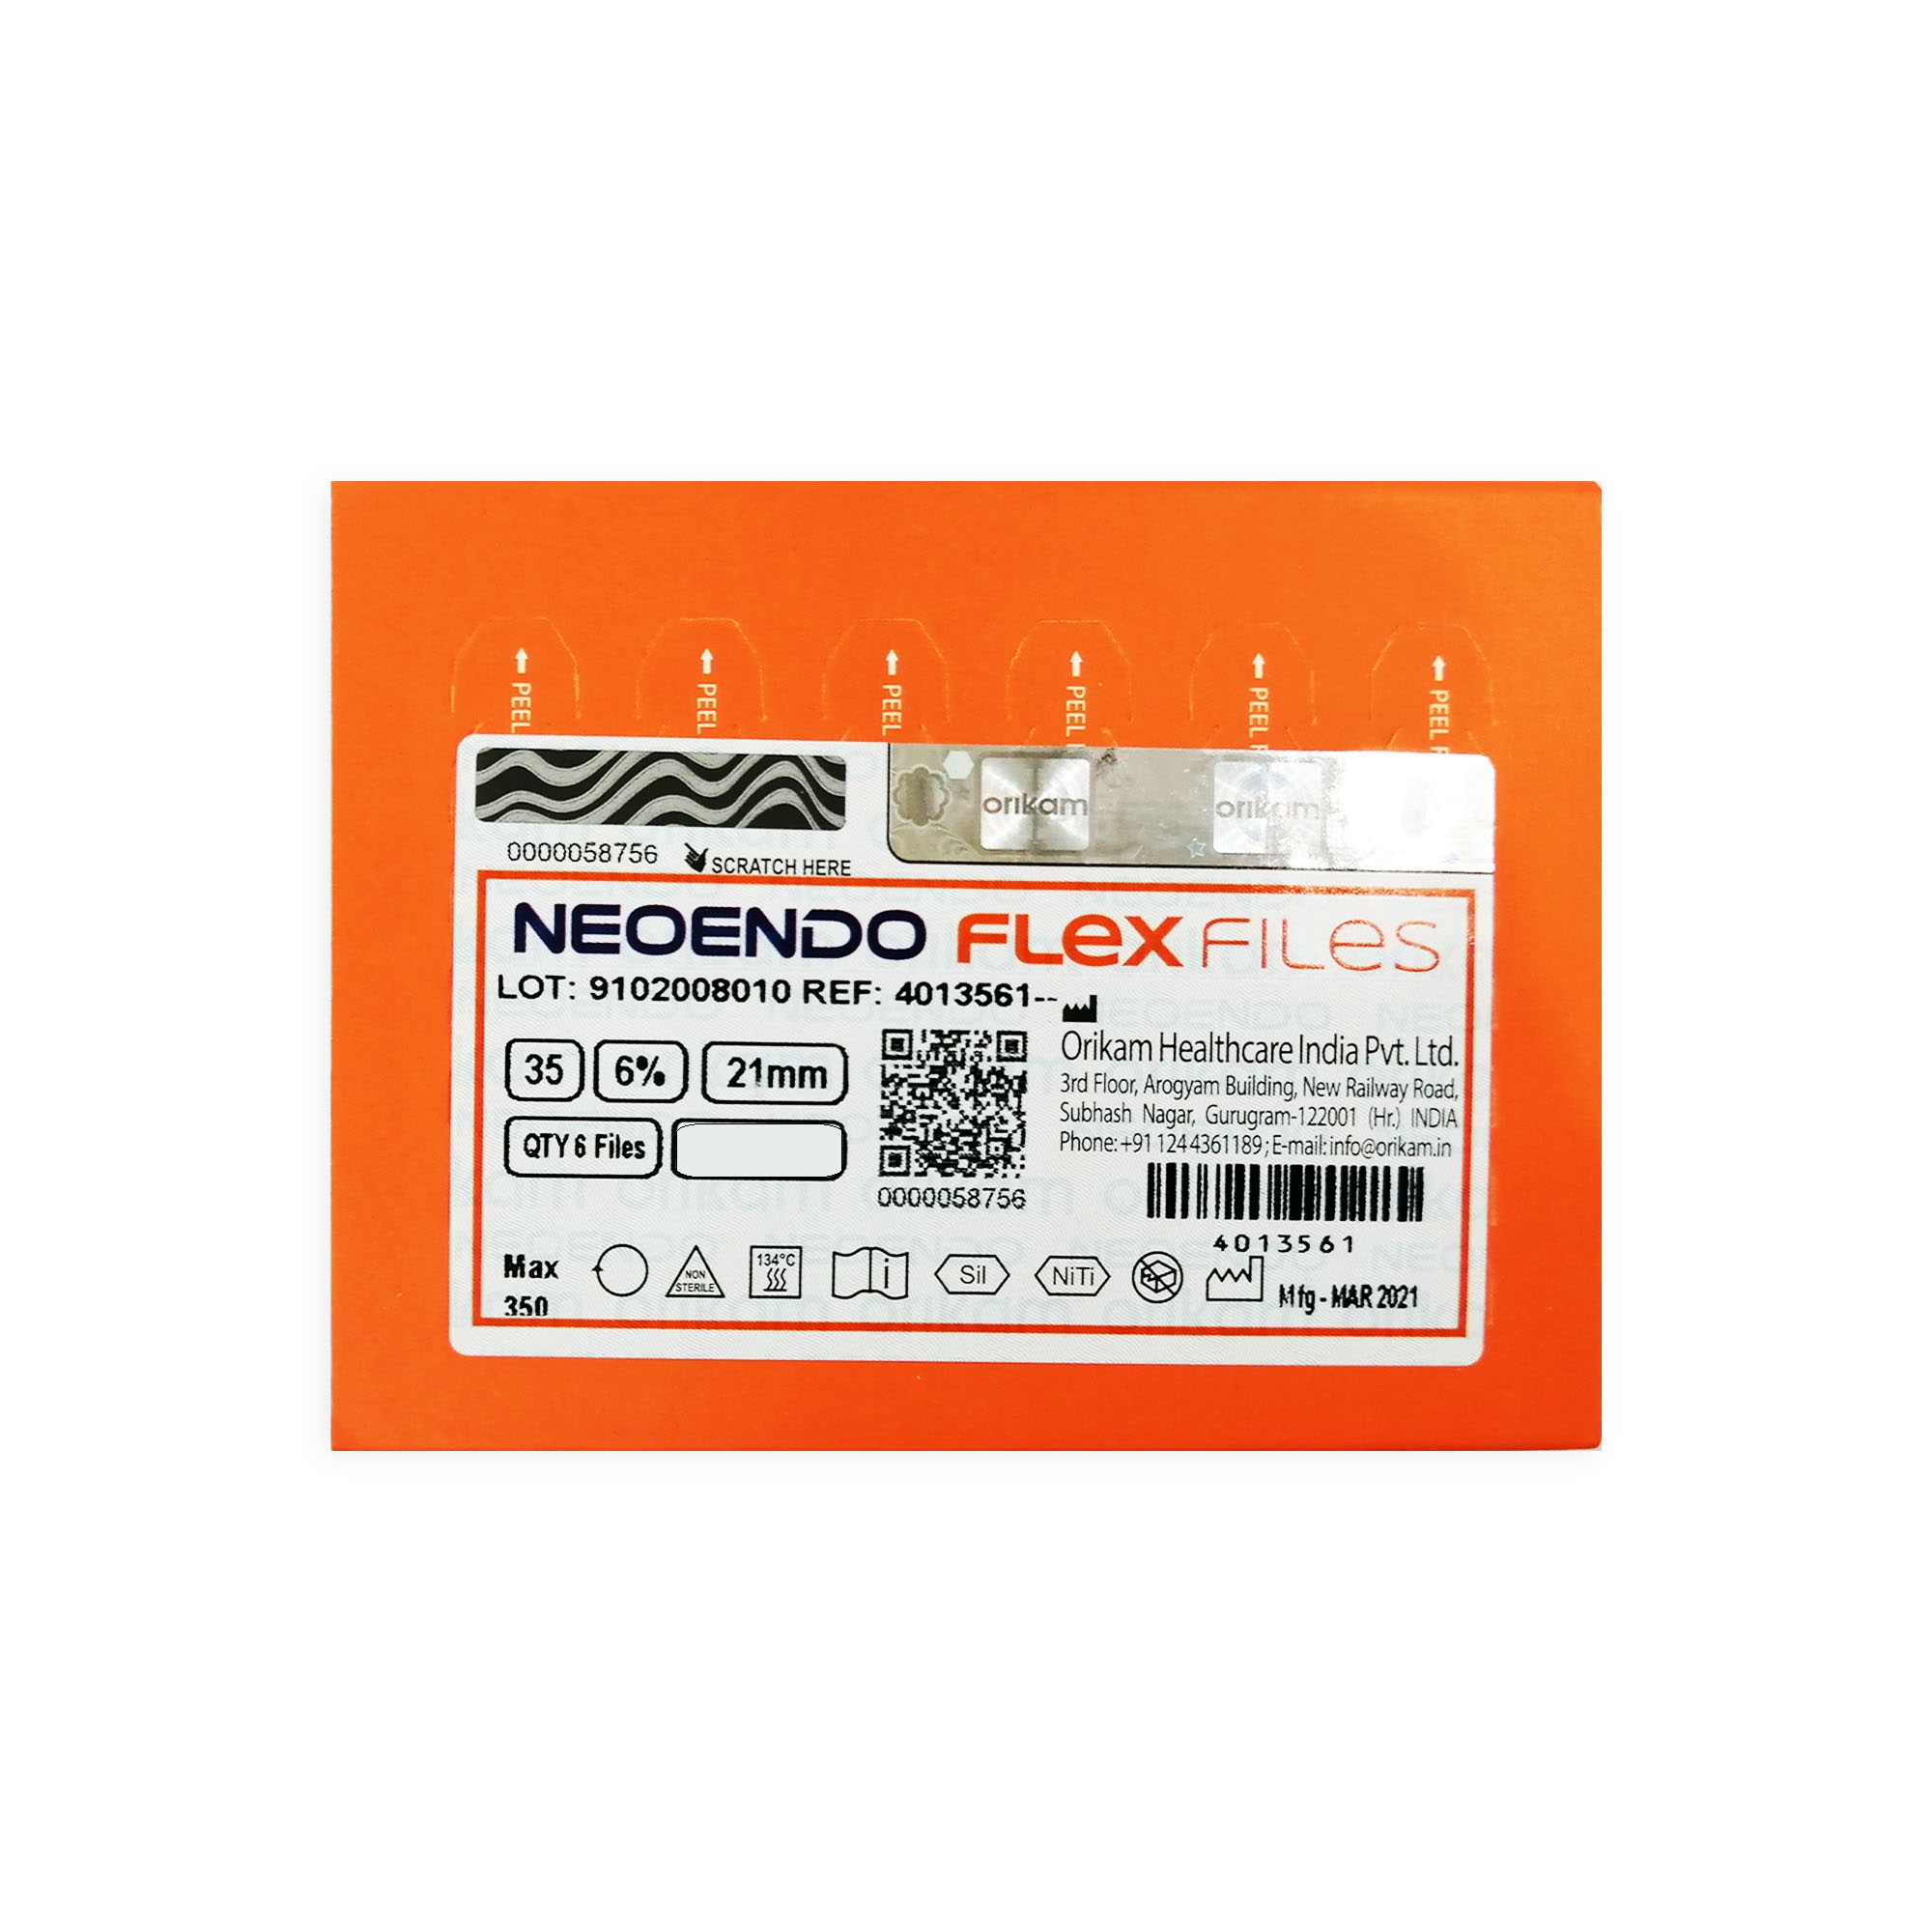 NeoEndo Flex Files 21mm 20/4 Endo Rotary Files